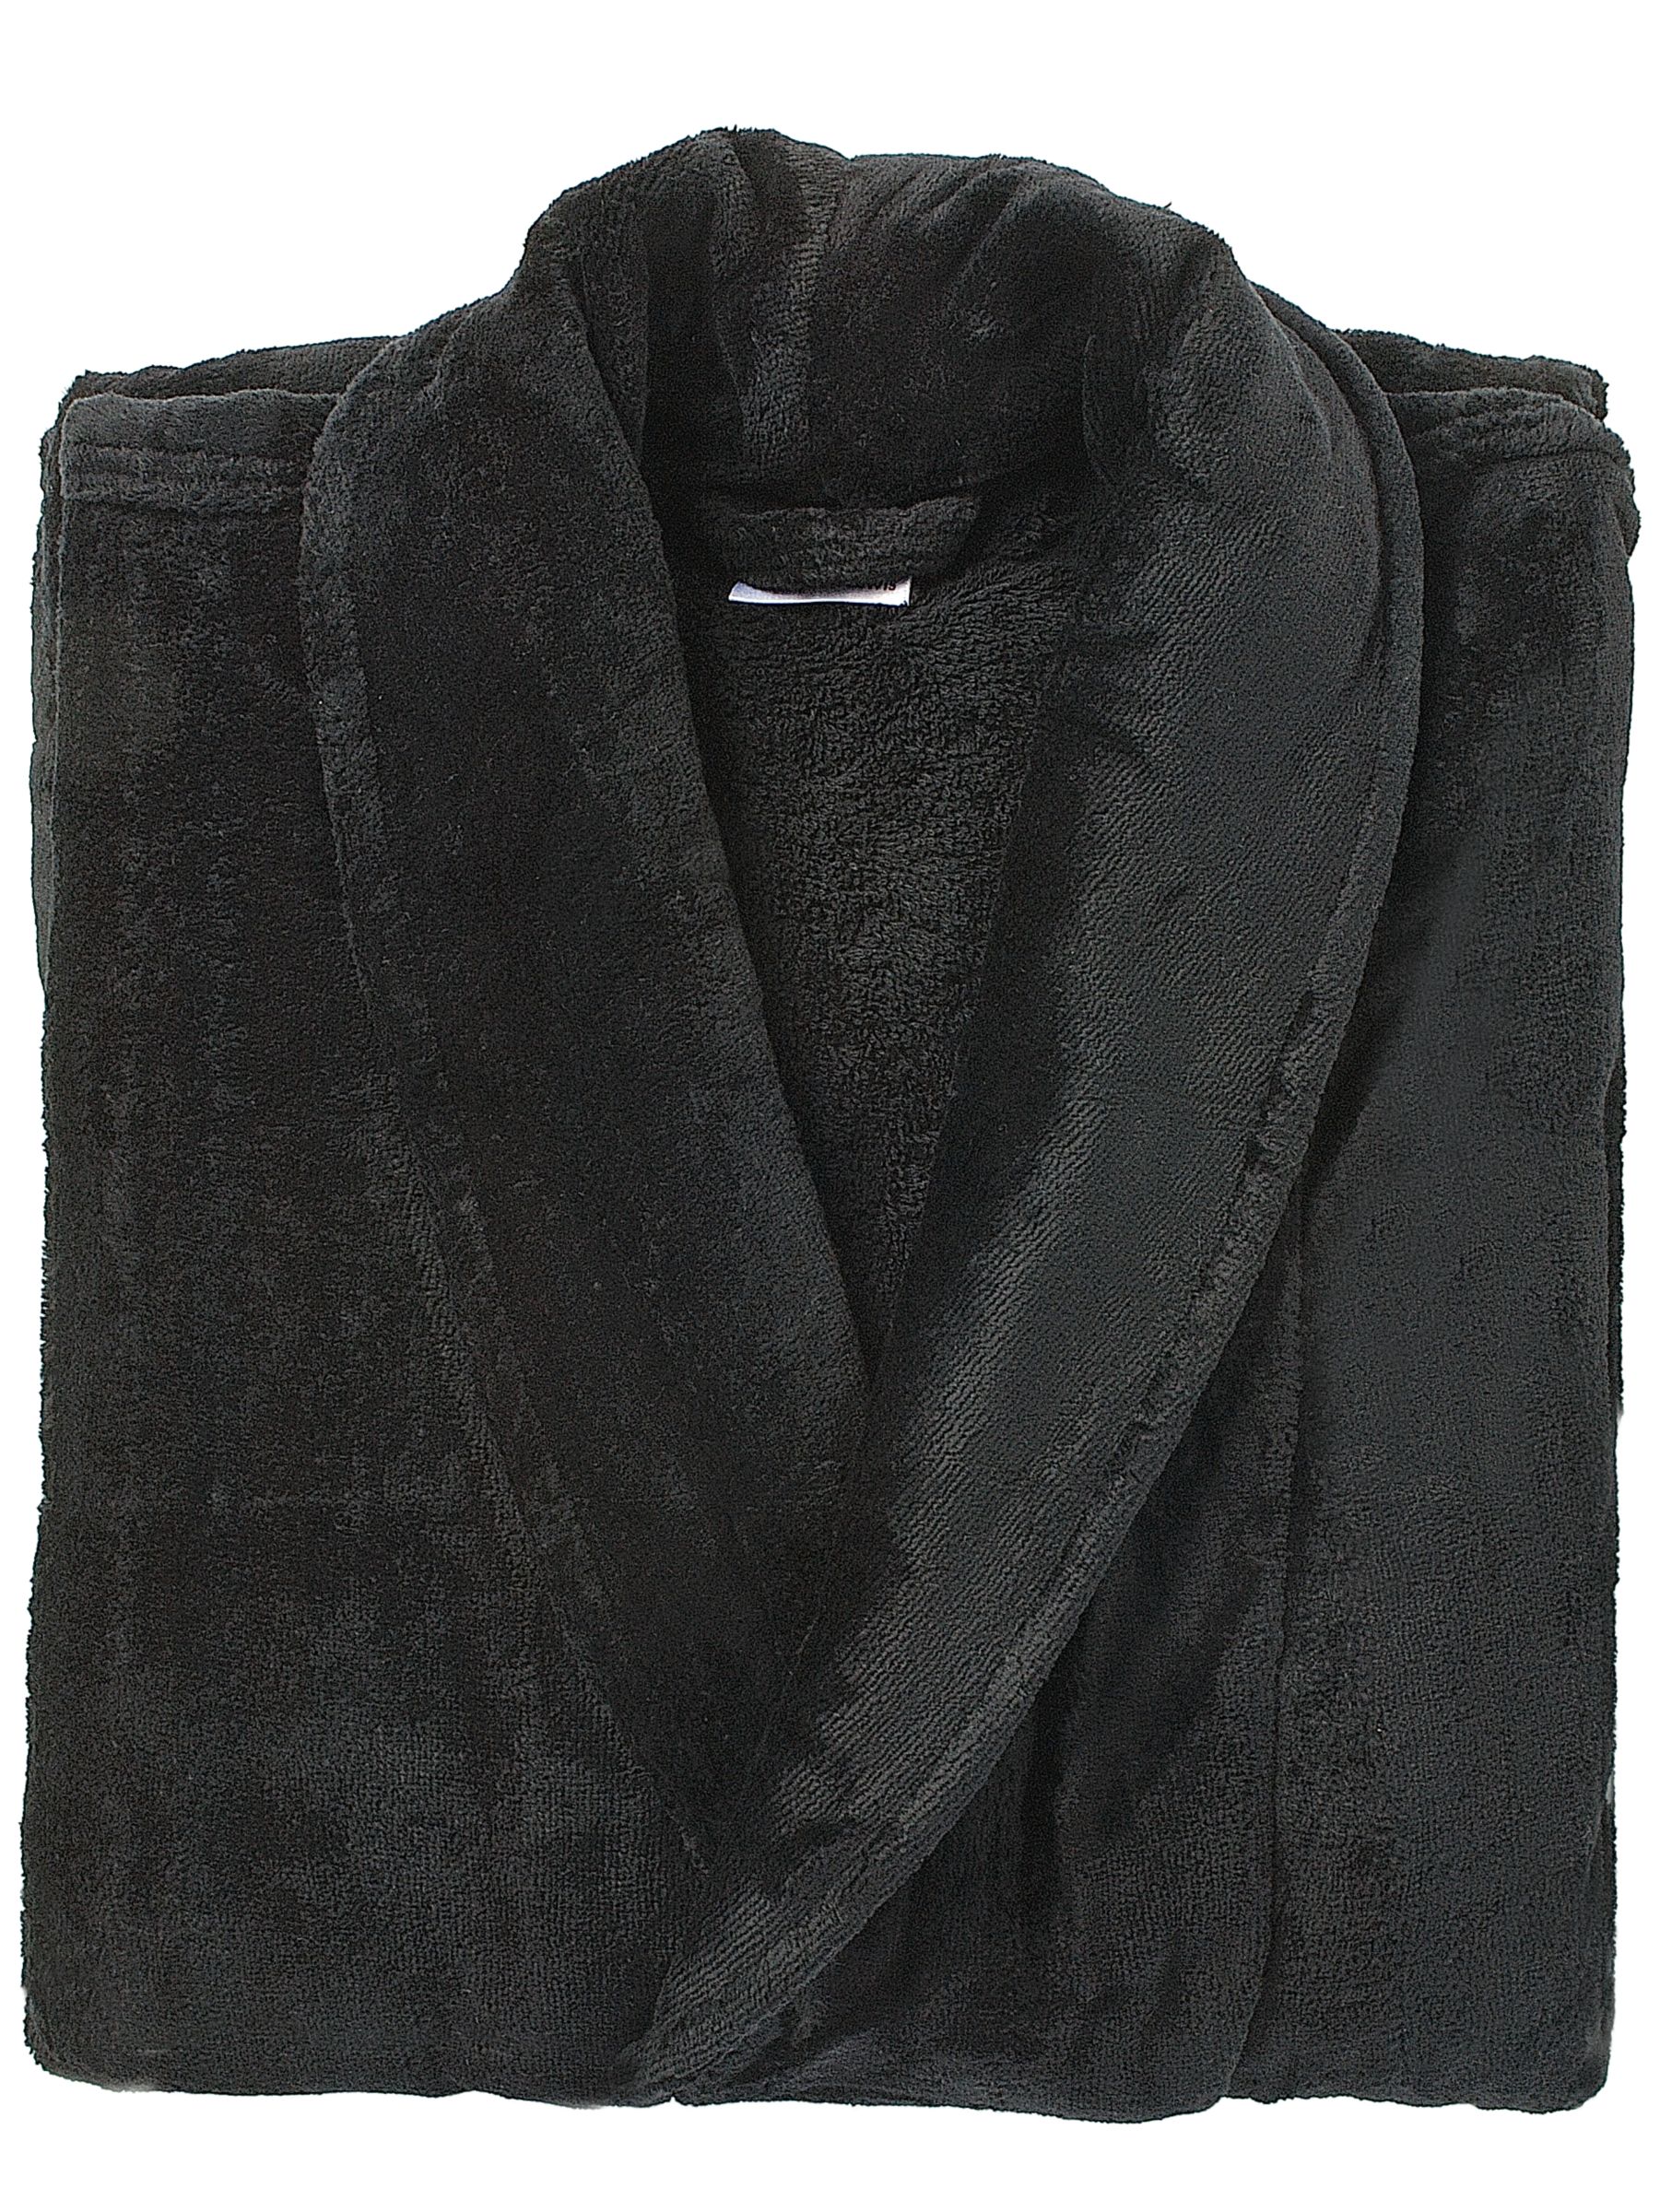 John Lewis Velour Unisex Bathrobe, Nero, Extra Large, 112-117cm (44-46)